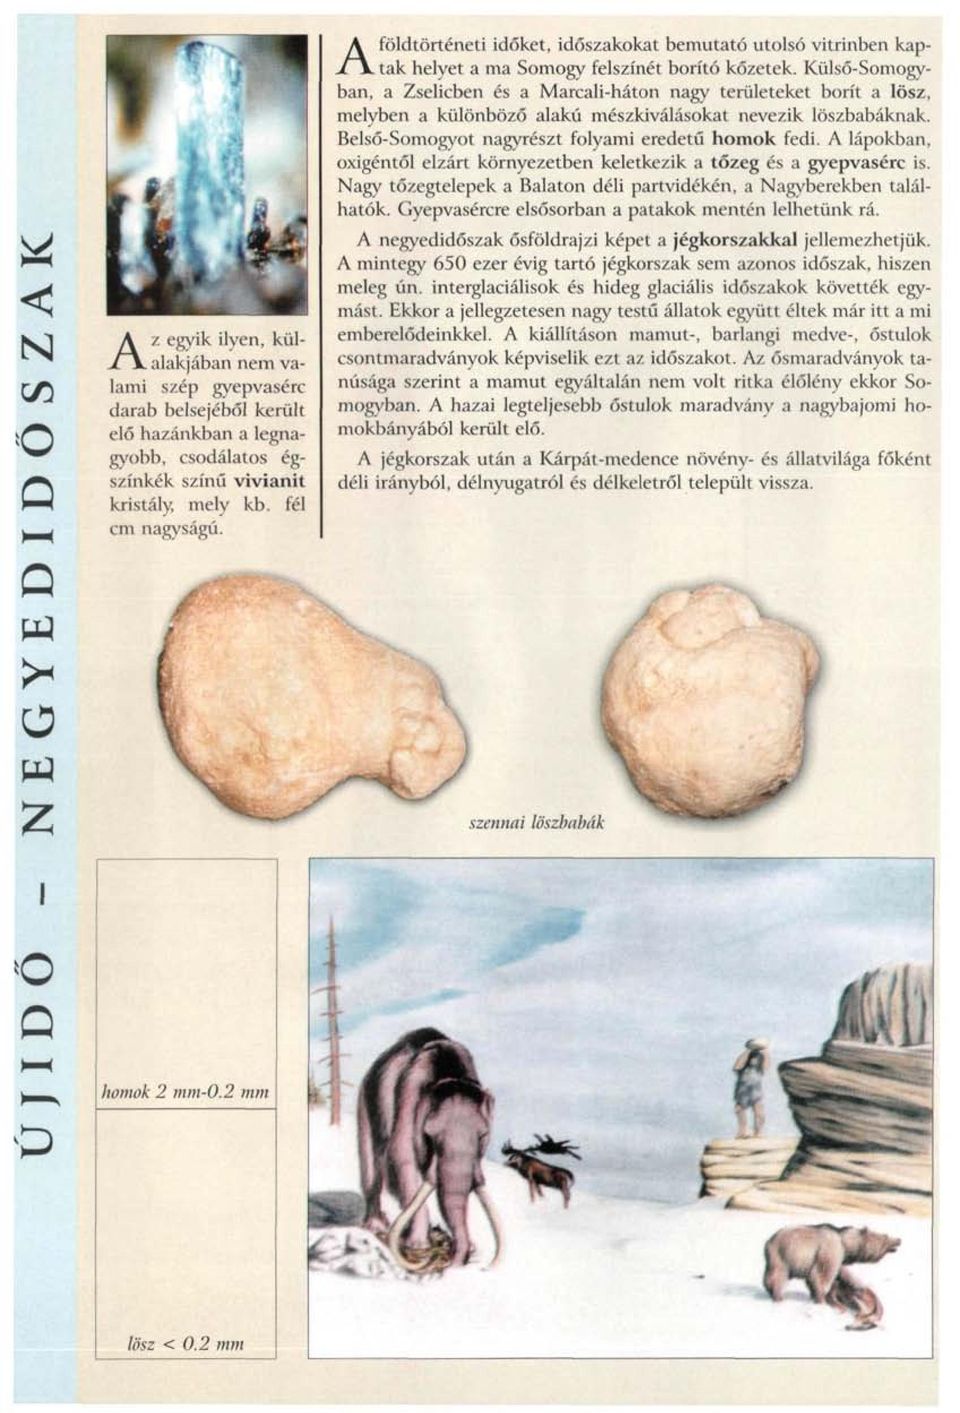 Külső-Somogyban, a Zselicben és a Marcali-háton nagy területeket borít a lösz, melyben a különböző alakú mészkiválásokat nevezik löszbabáknak. Belső-Somogyot nagyrészt folyami eredetű homok fedi.